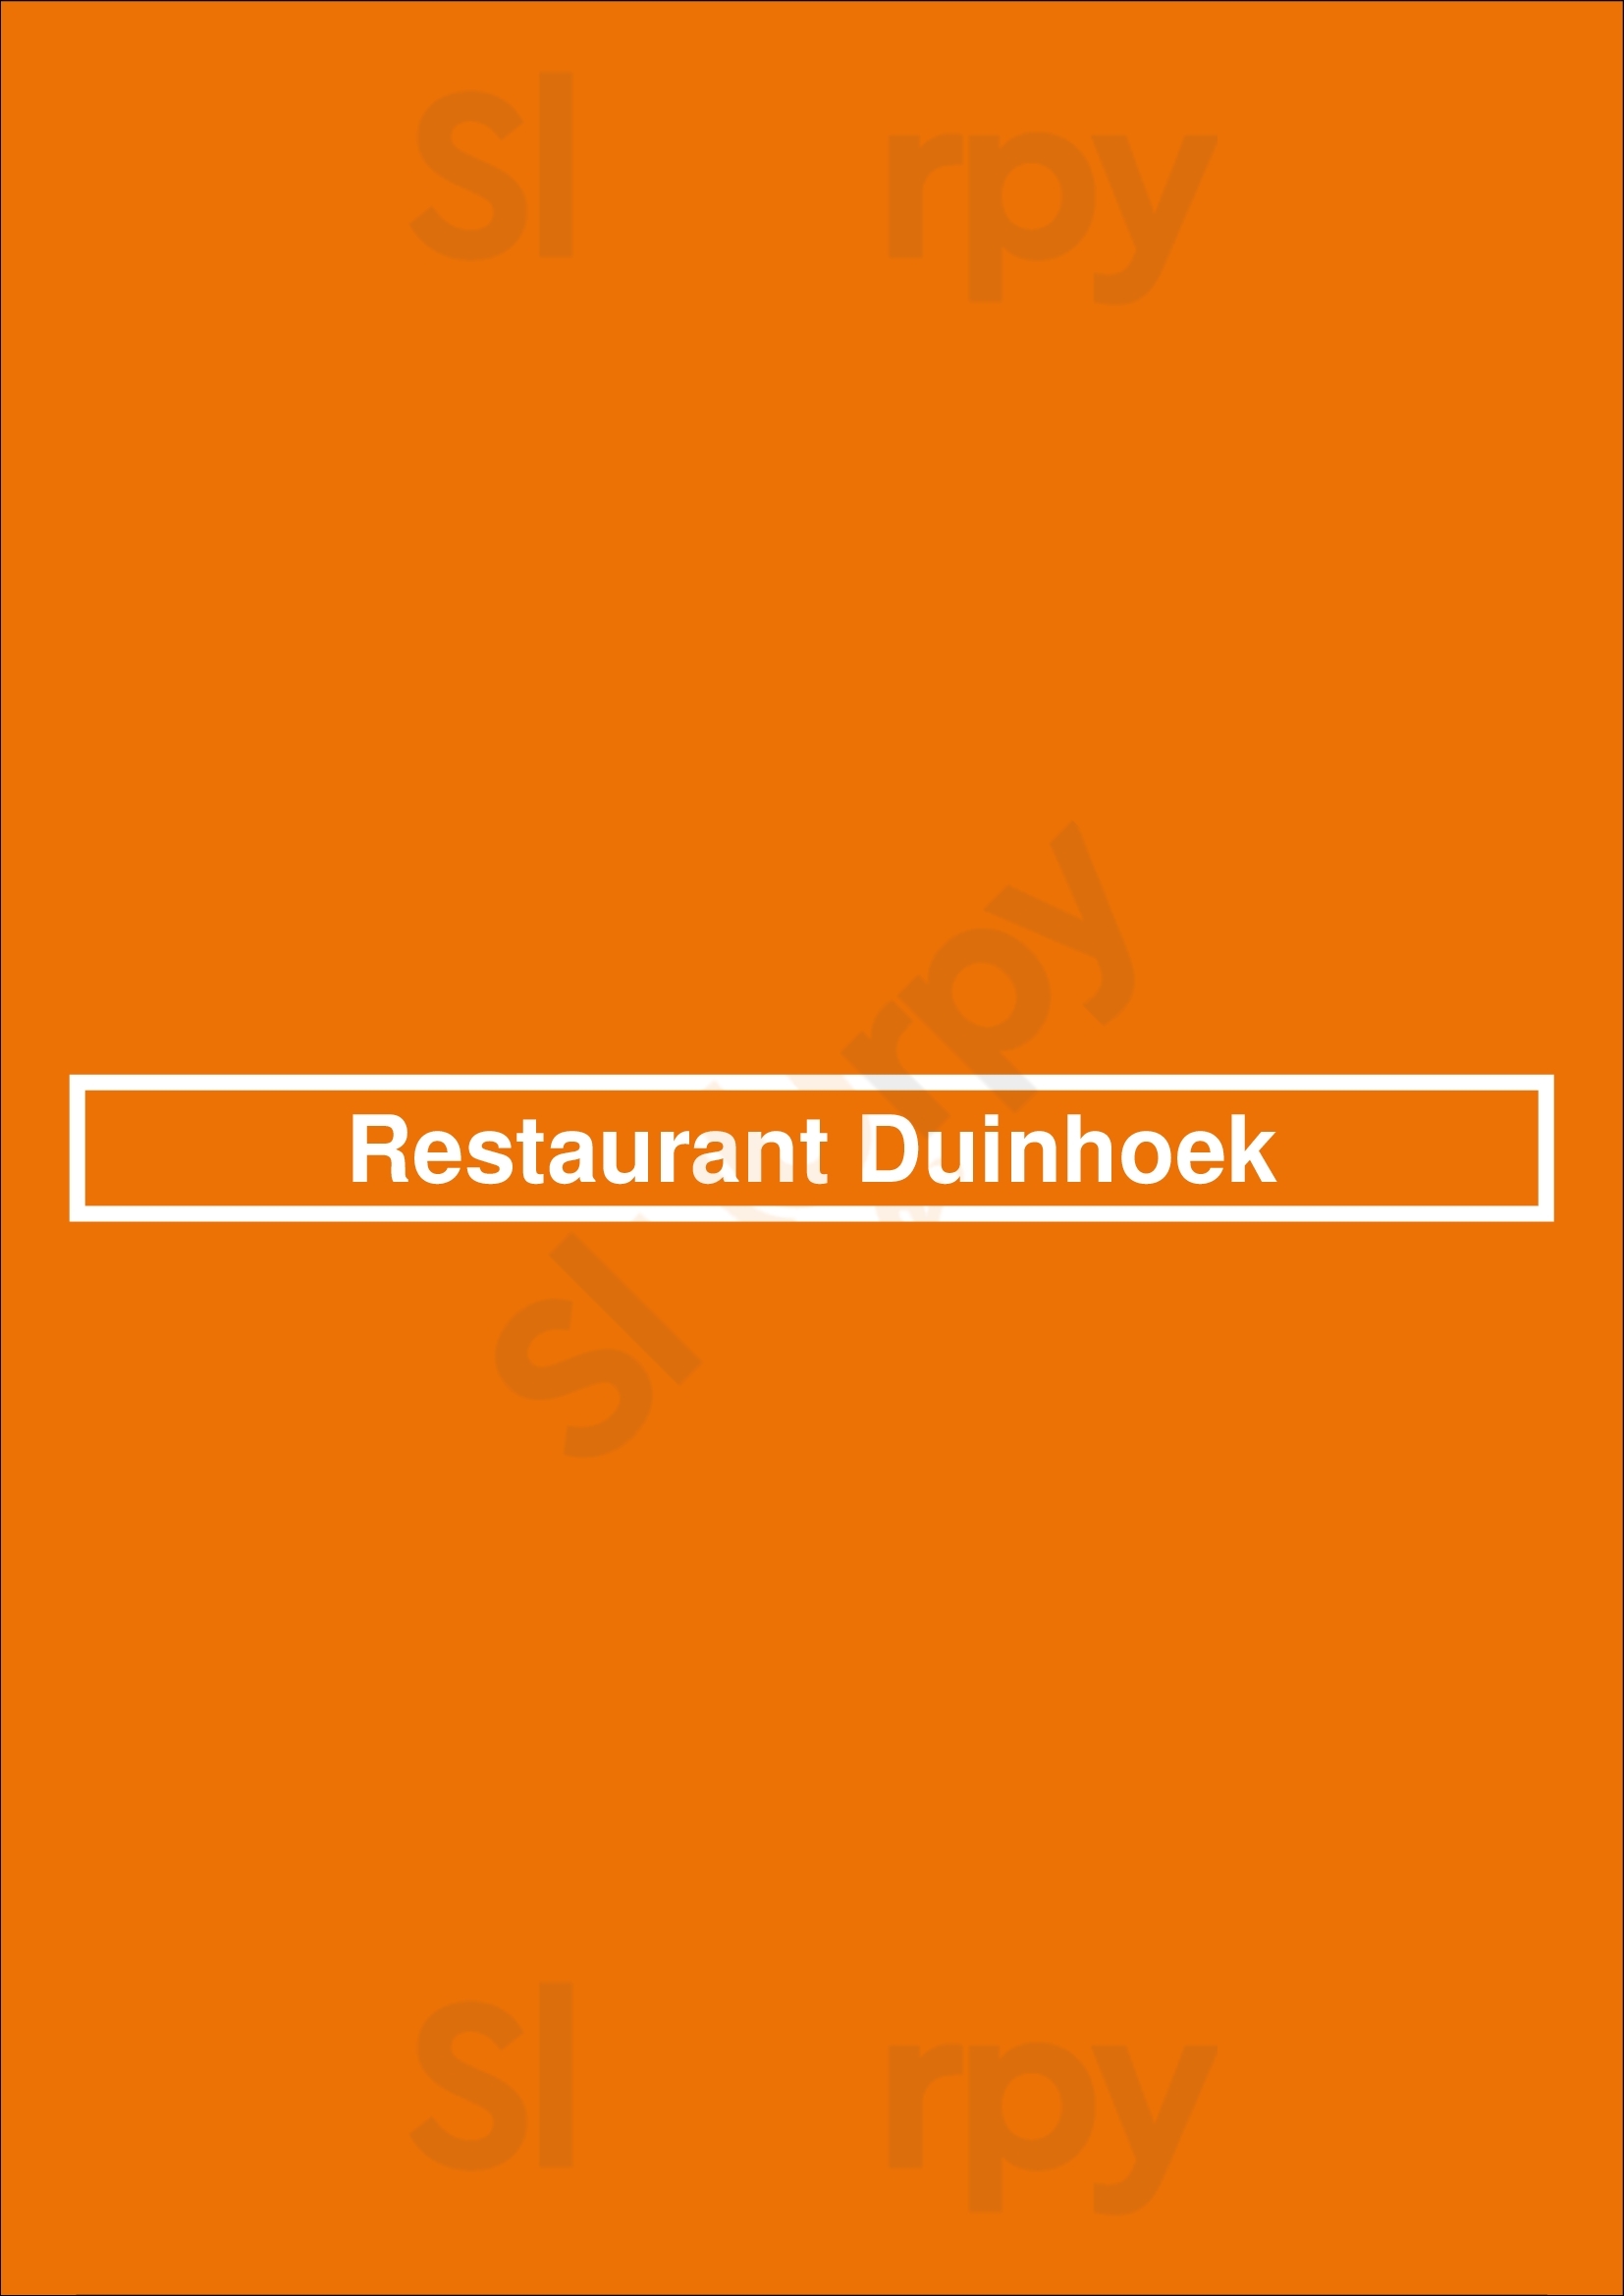 Restaurant Duinhoek Hellevoetsluis Menu - 1